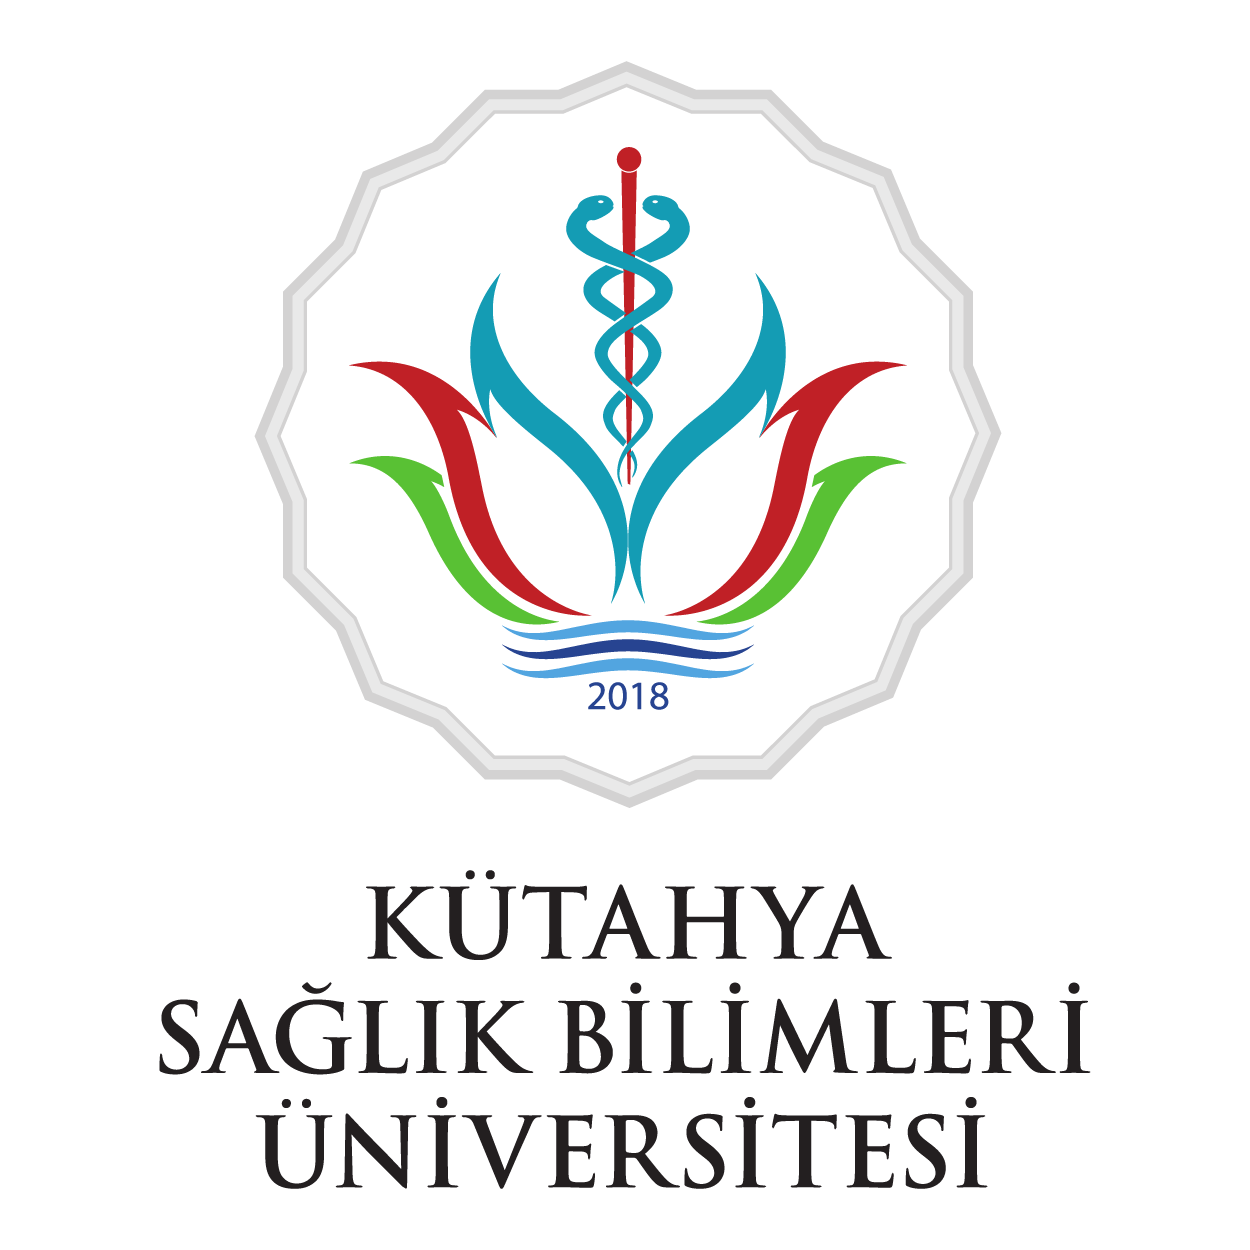 Kütahya Sağlık Bilimleri Üniversitesi Logo png